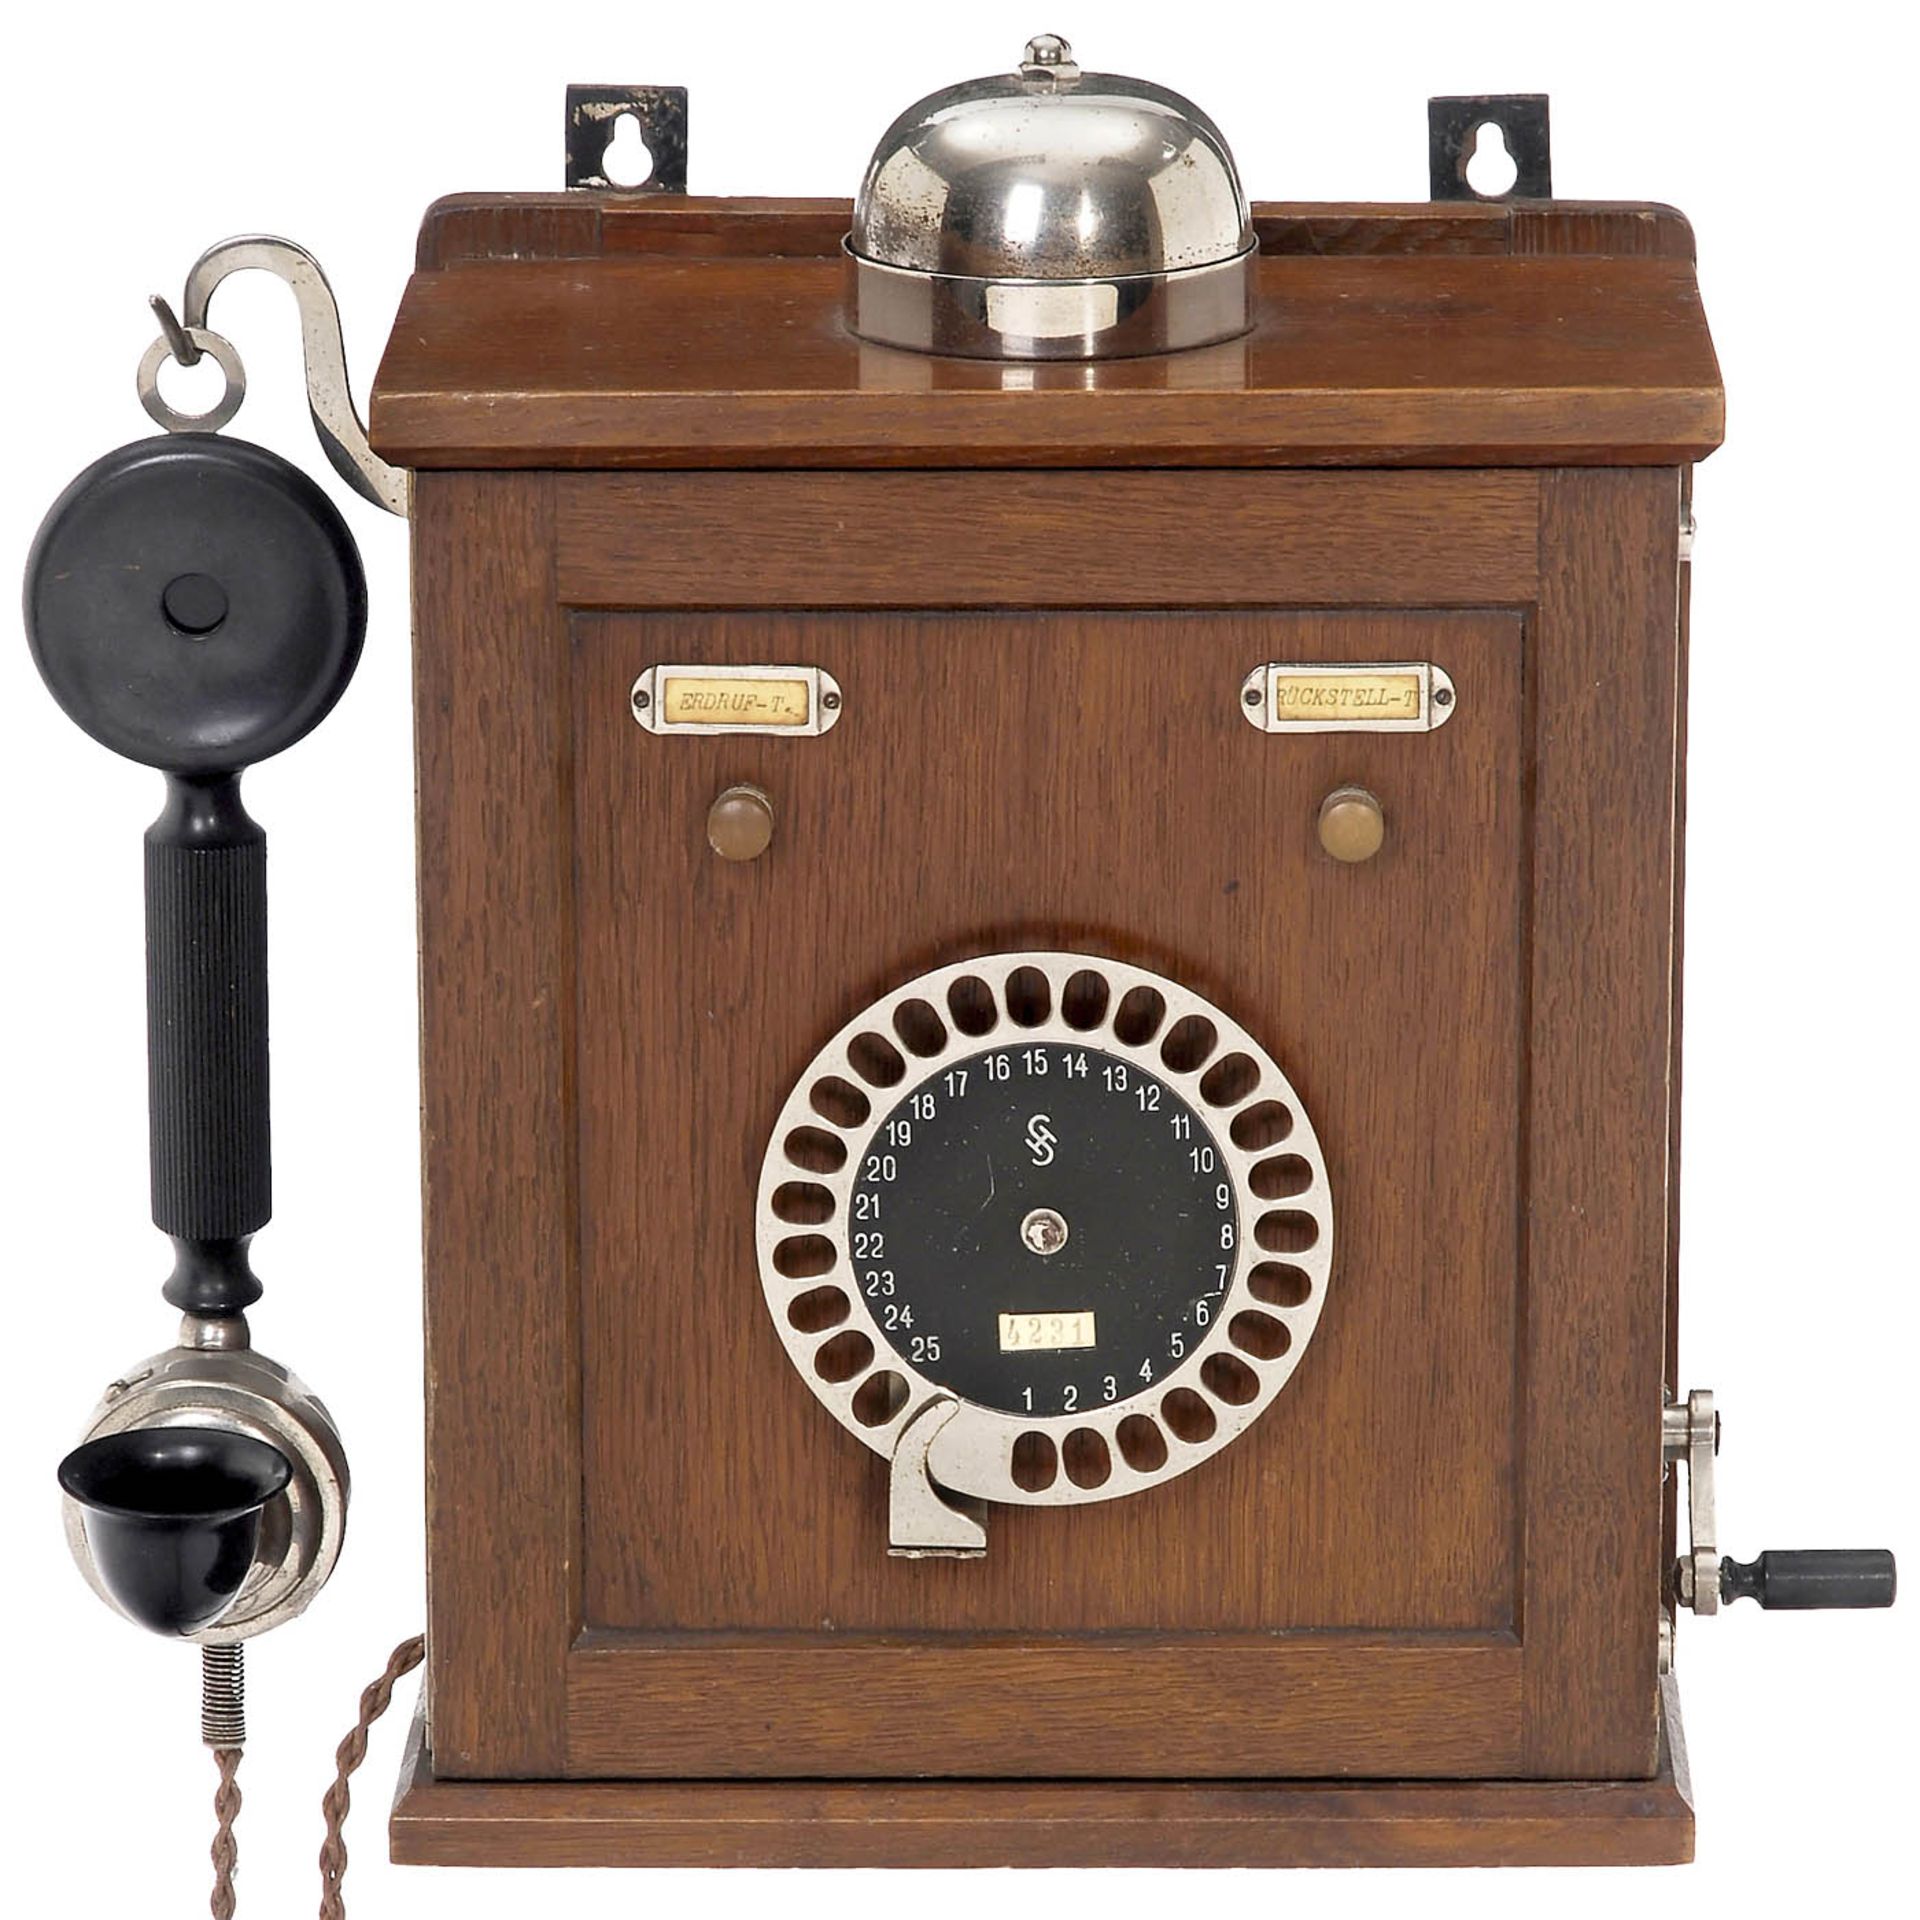 Haustelephon mit 25-teiligem Nummernschalter, um 1923 Siemens & Halske, Berlin. Eichengehäuse, 3-